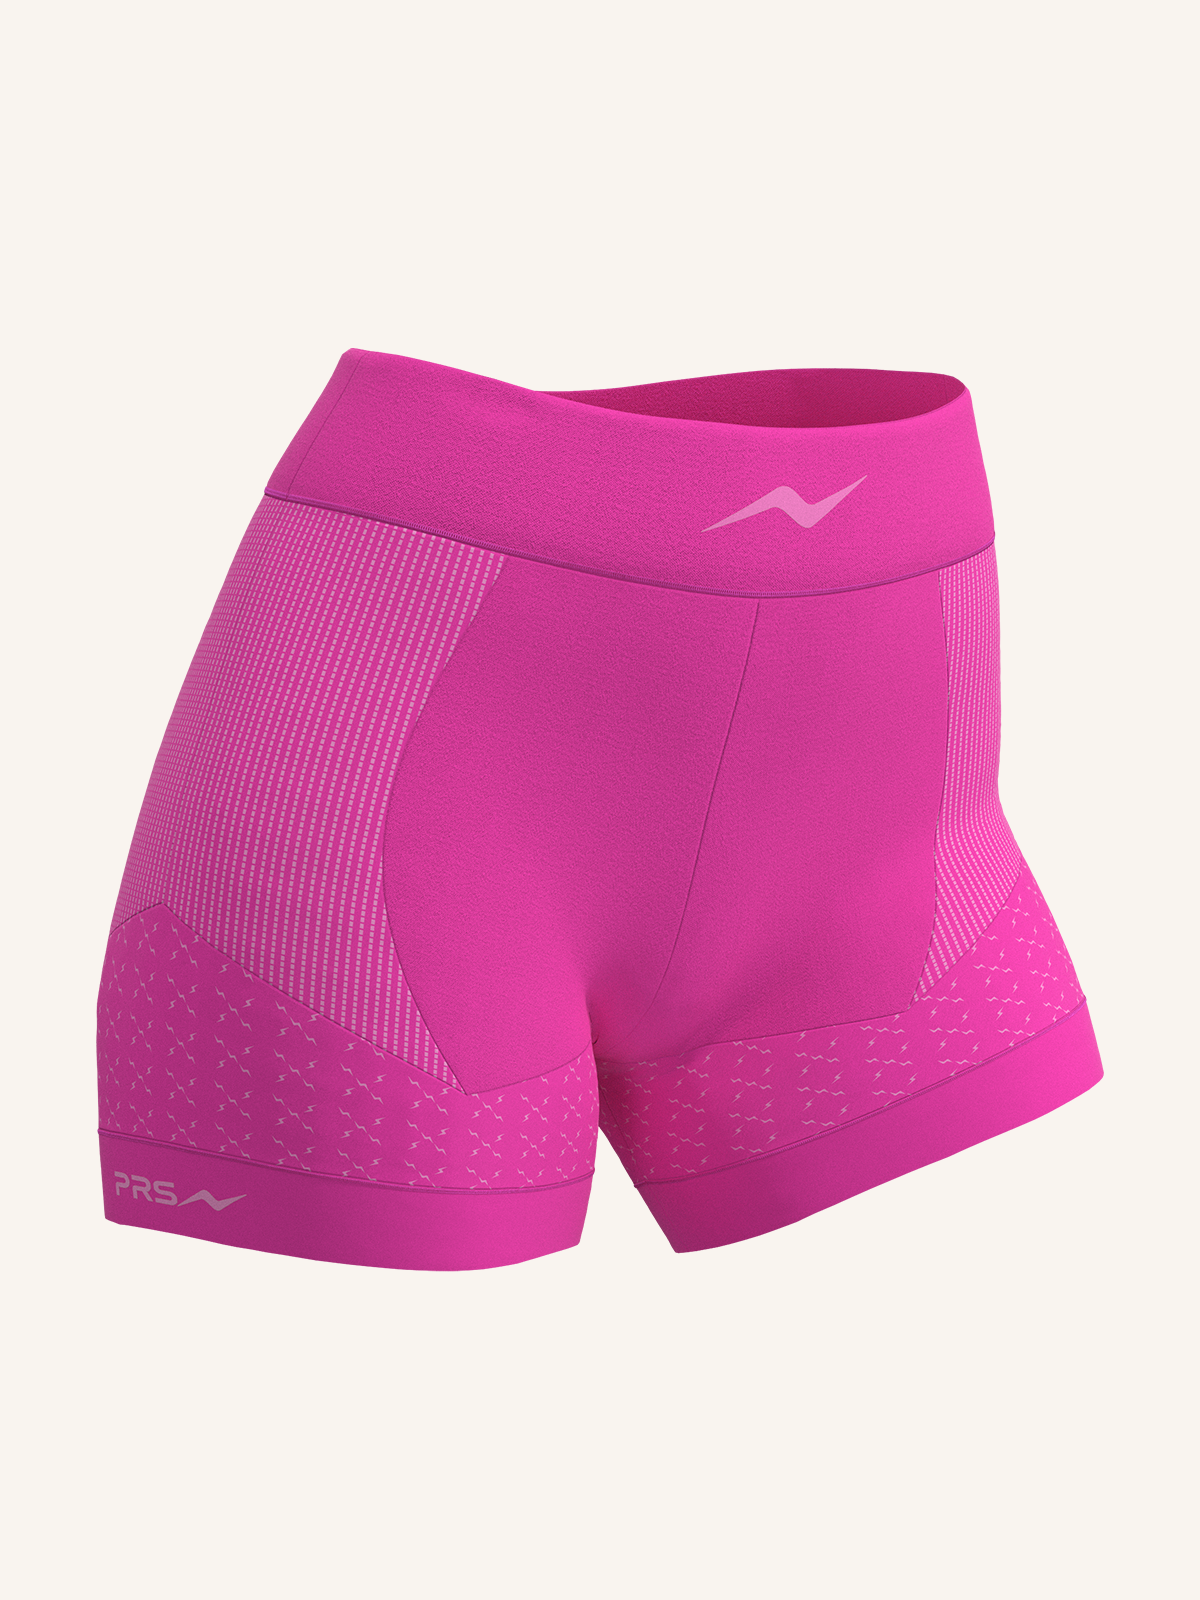 Shorts da Running  per Donna | Confezione Singola | PRS PRO 600